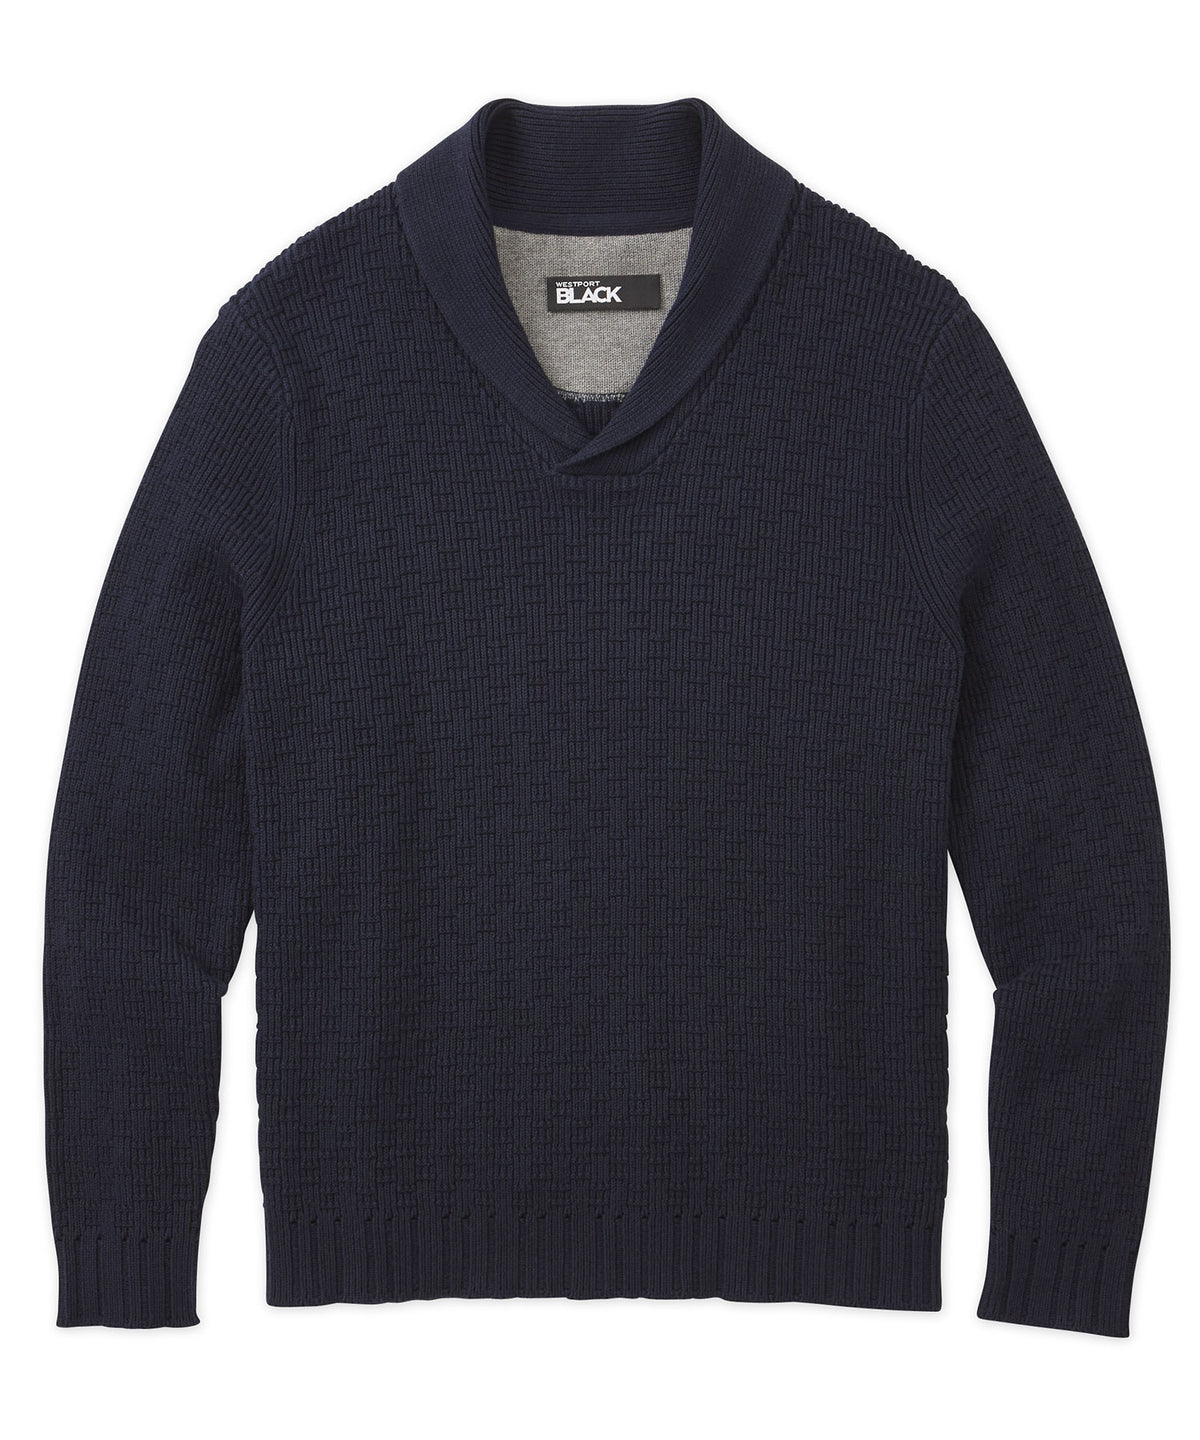 Westport Black Shawl Collar Sweater, Big & Tall